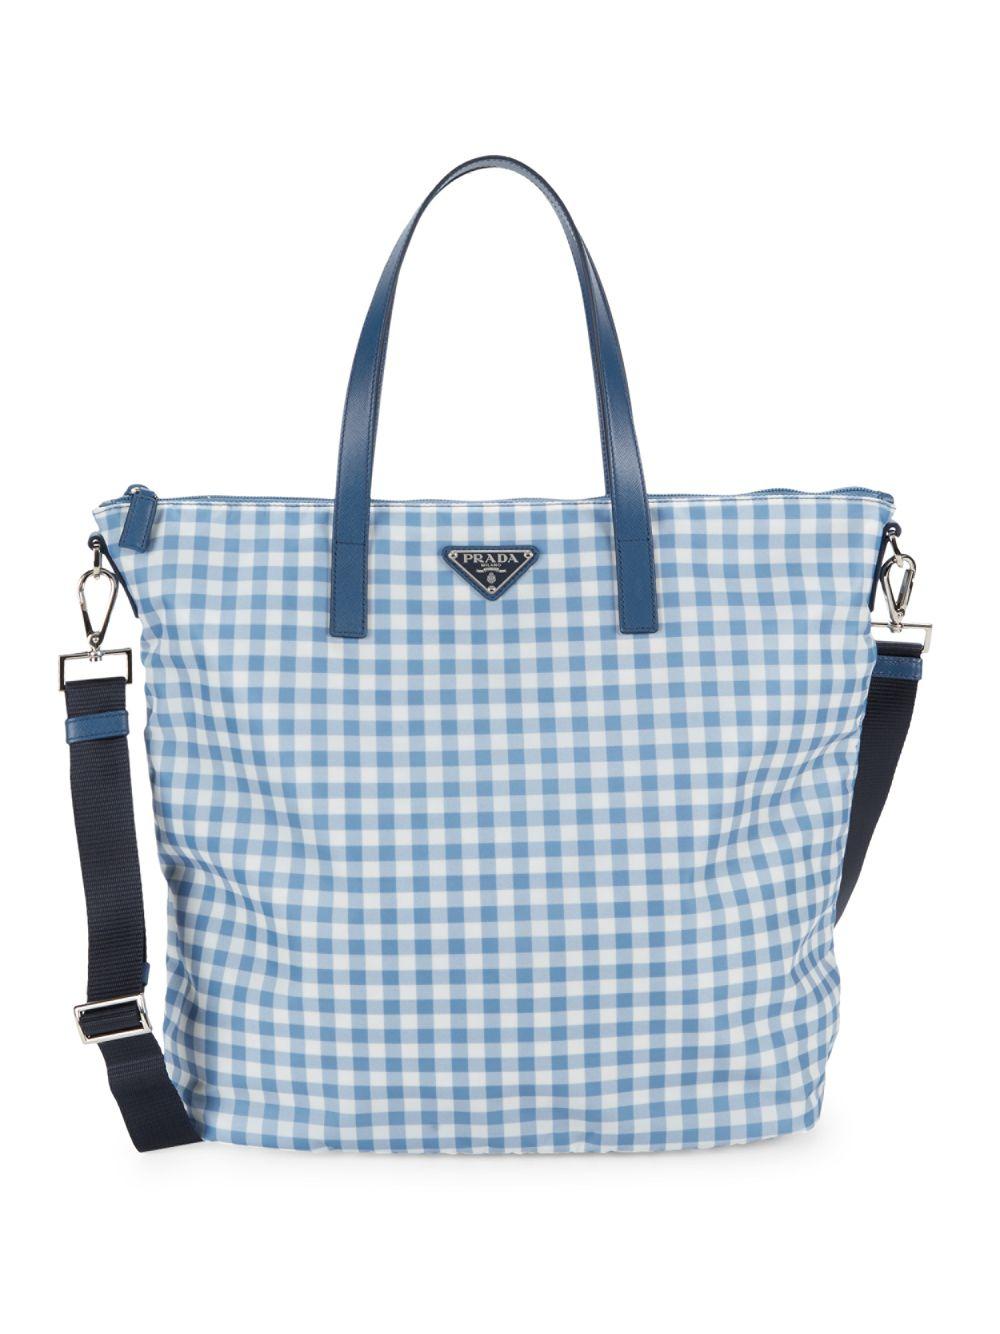 prada checkered handbag